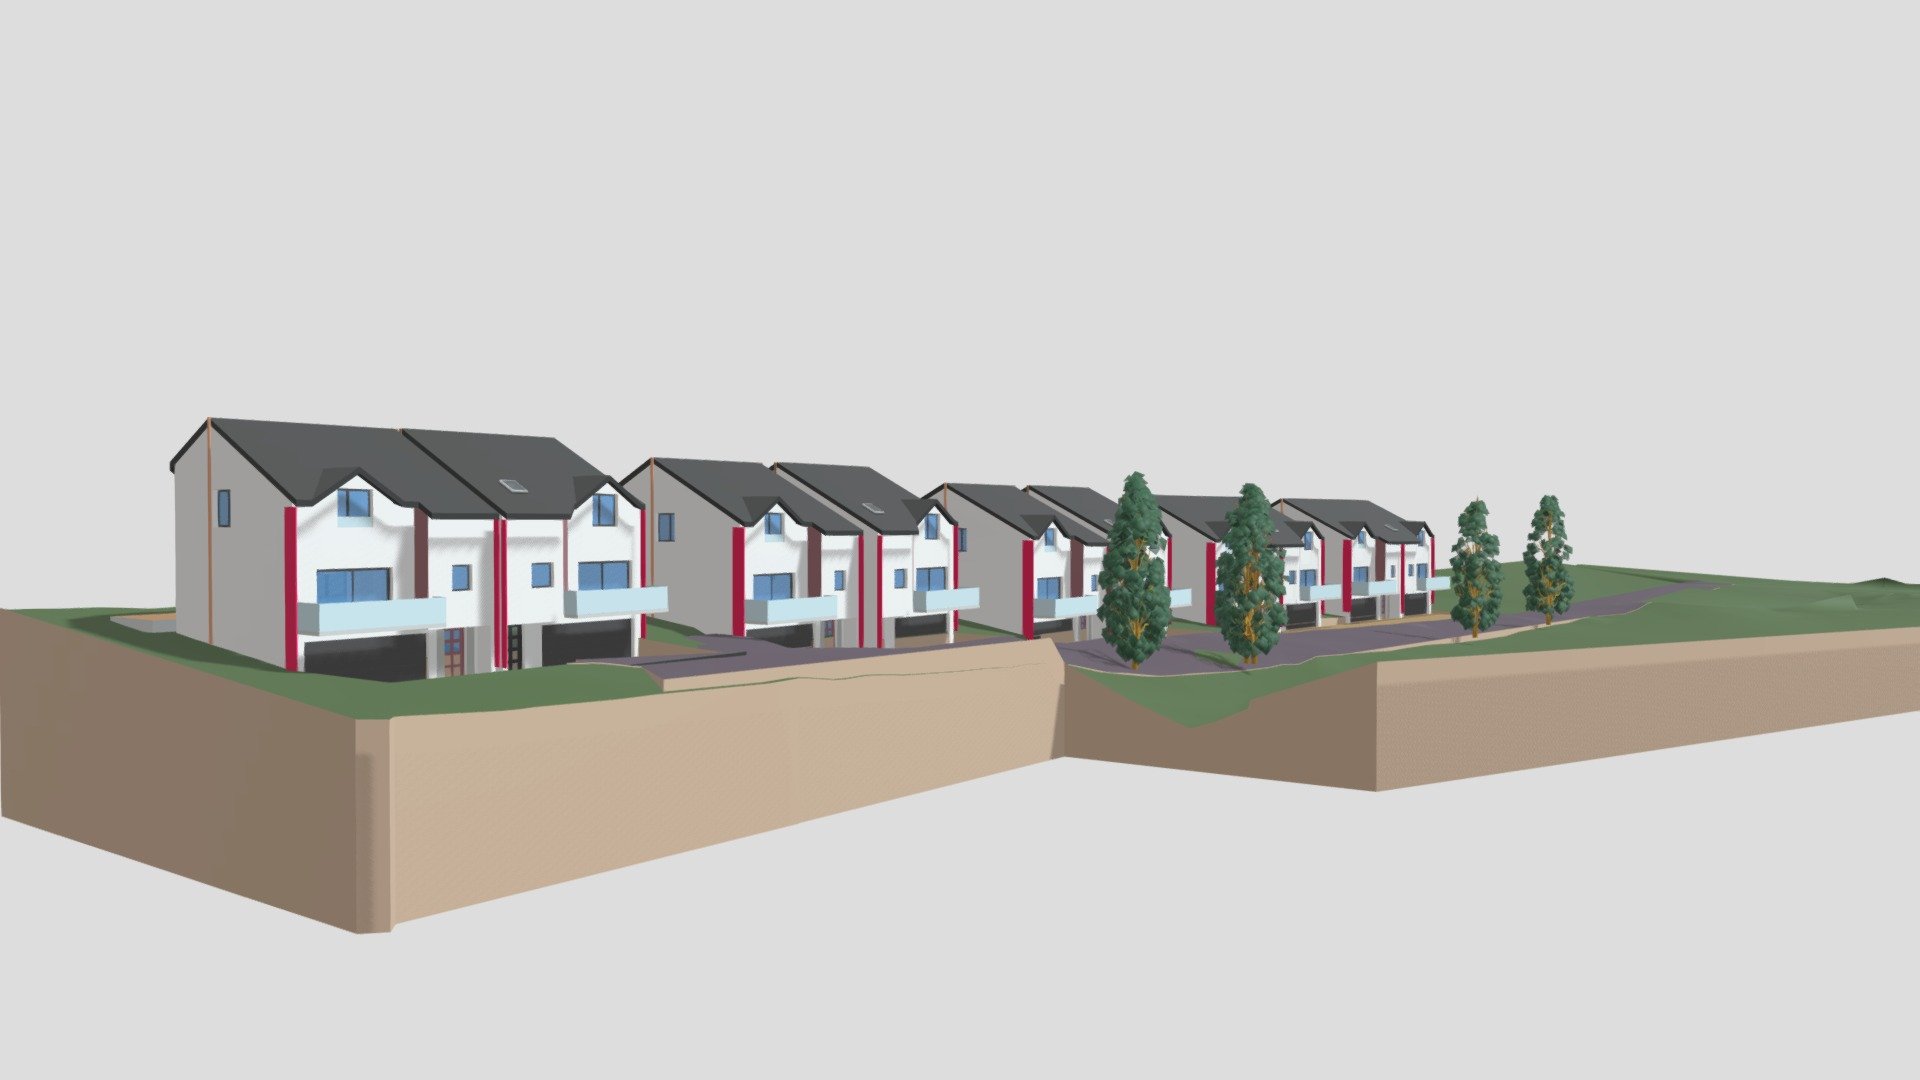 Esq 1 de 10 maisons HG Rossignol 04-2021 - 3D model by Philippe Blaise architecte Gard (@philippeblaise) 3d model